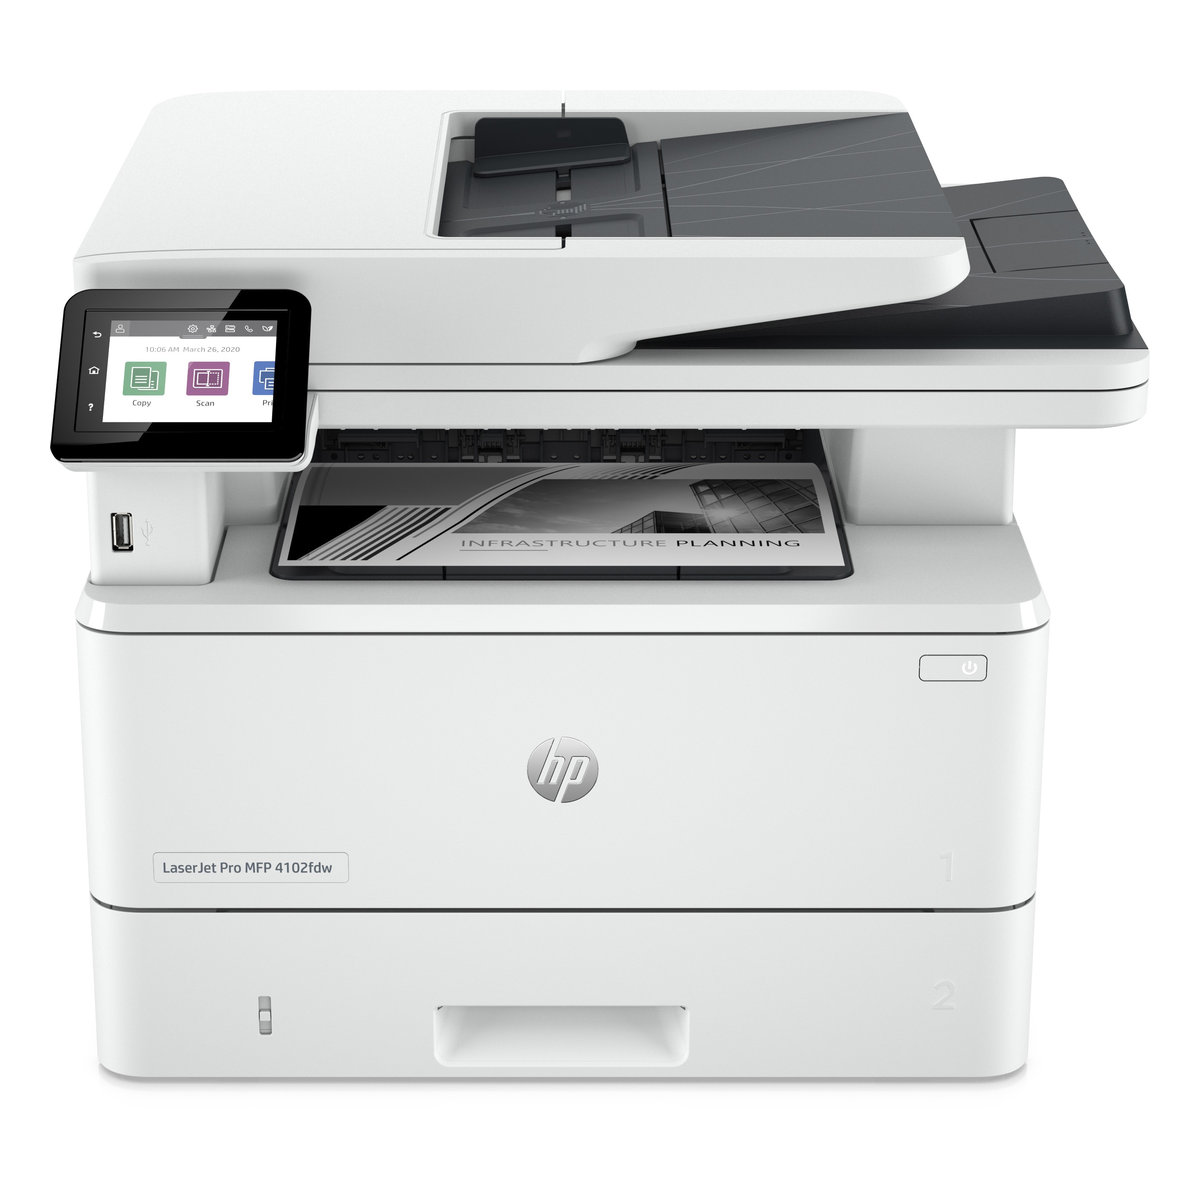 Náplně do tiskárny HP LaserJet Pro MFP 4102fdw